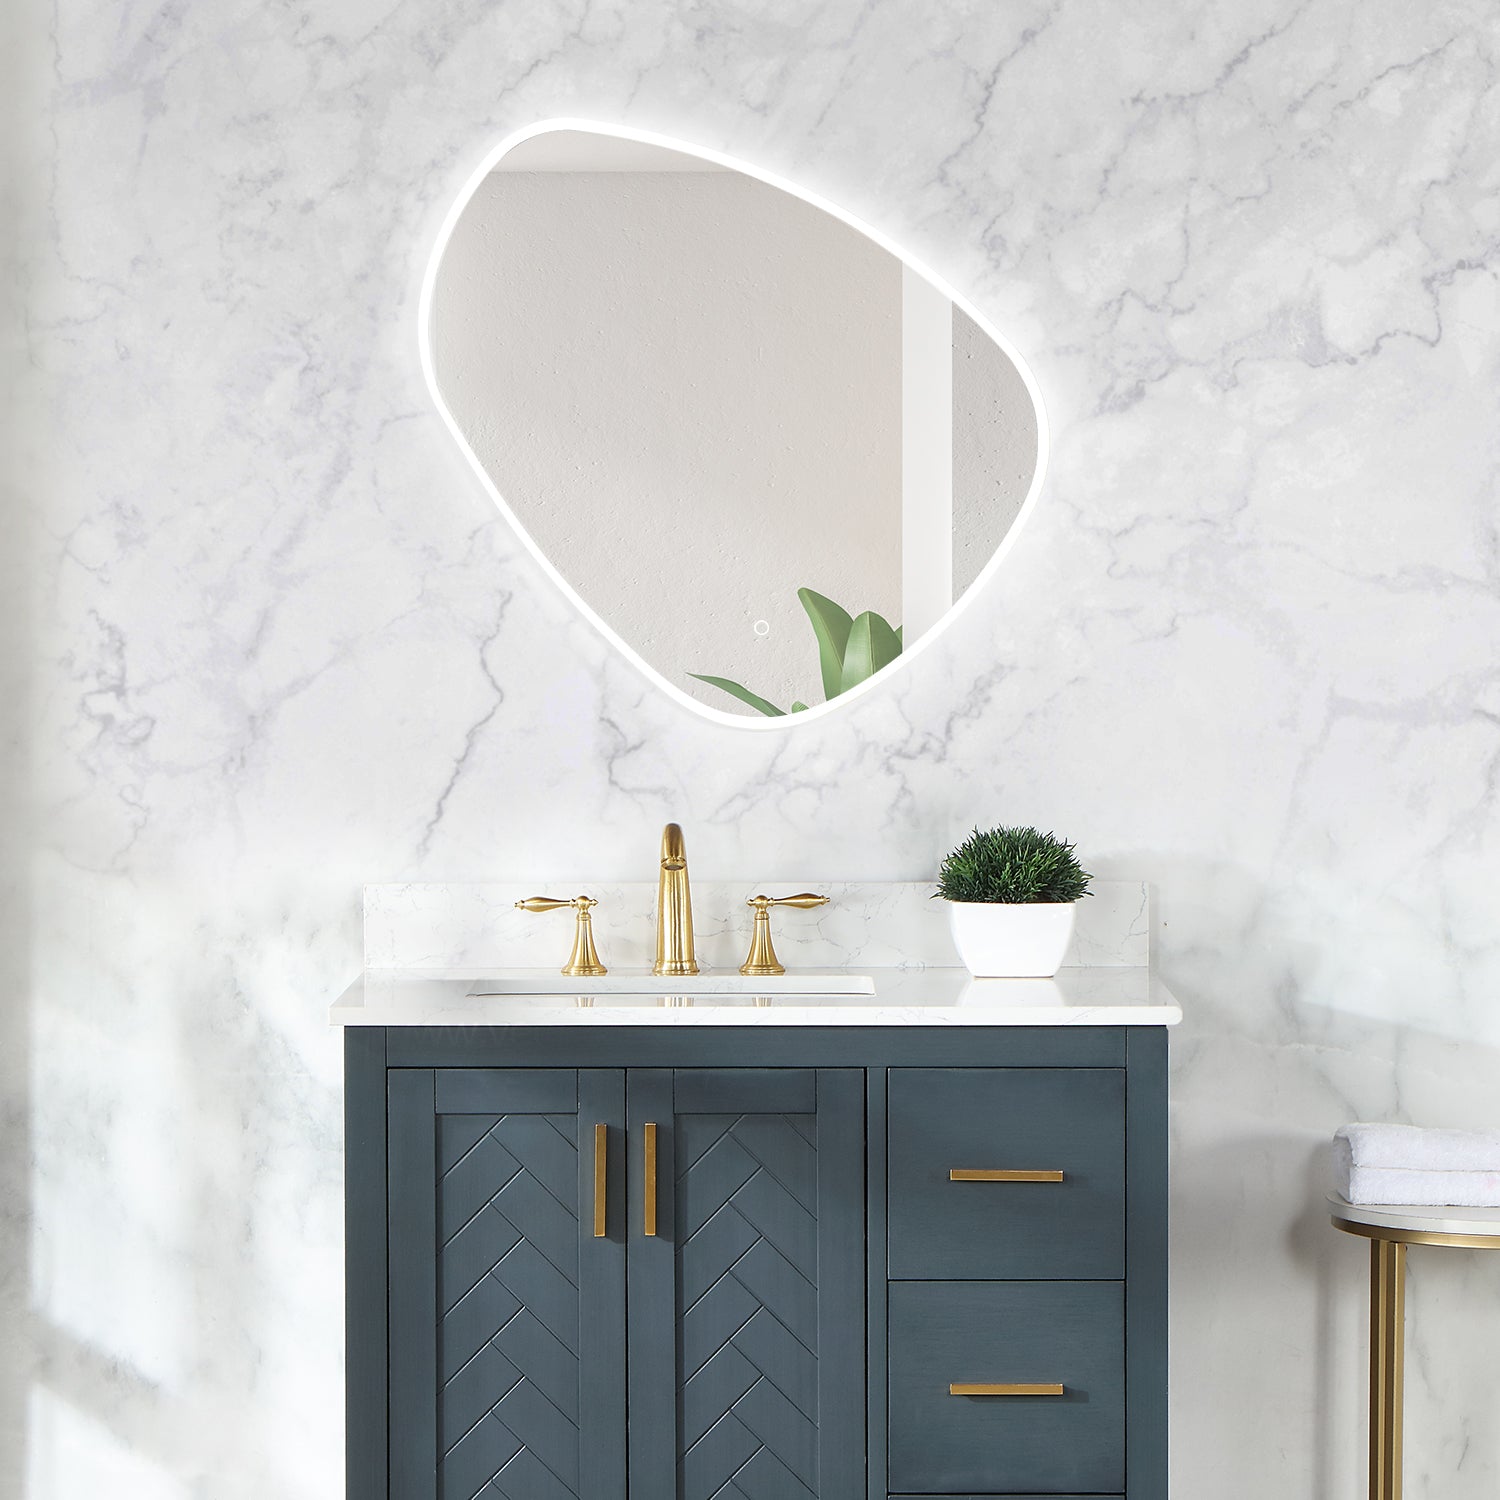 Rasso Novelty Frameless Modern Bathroom/Vanity LED Lighted Wall Mirror